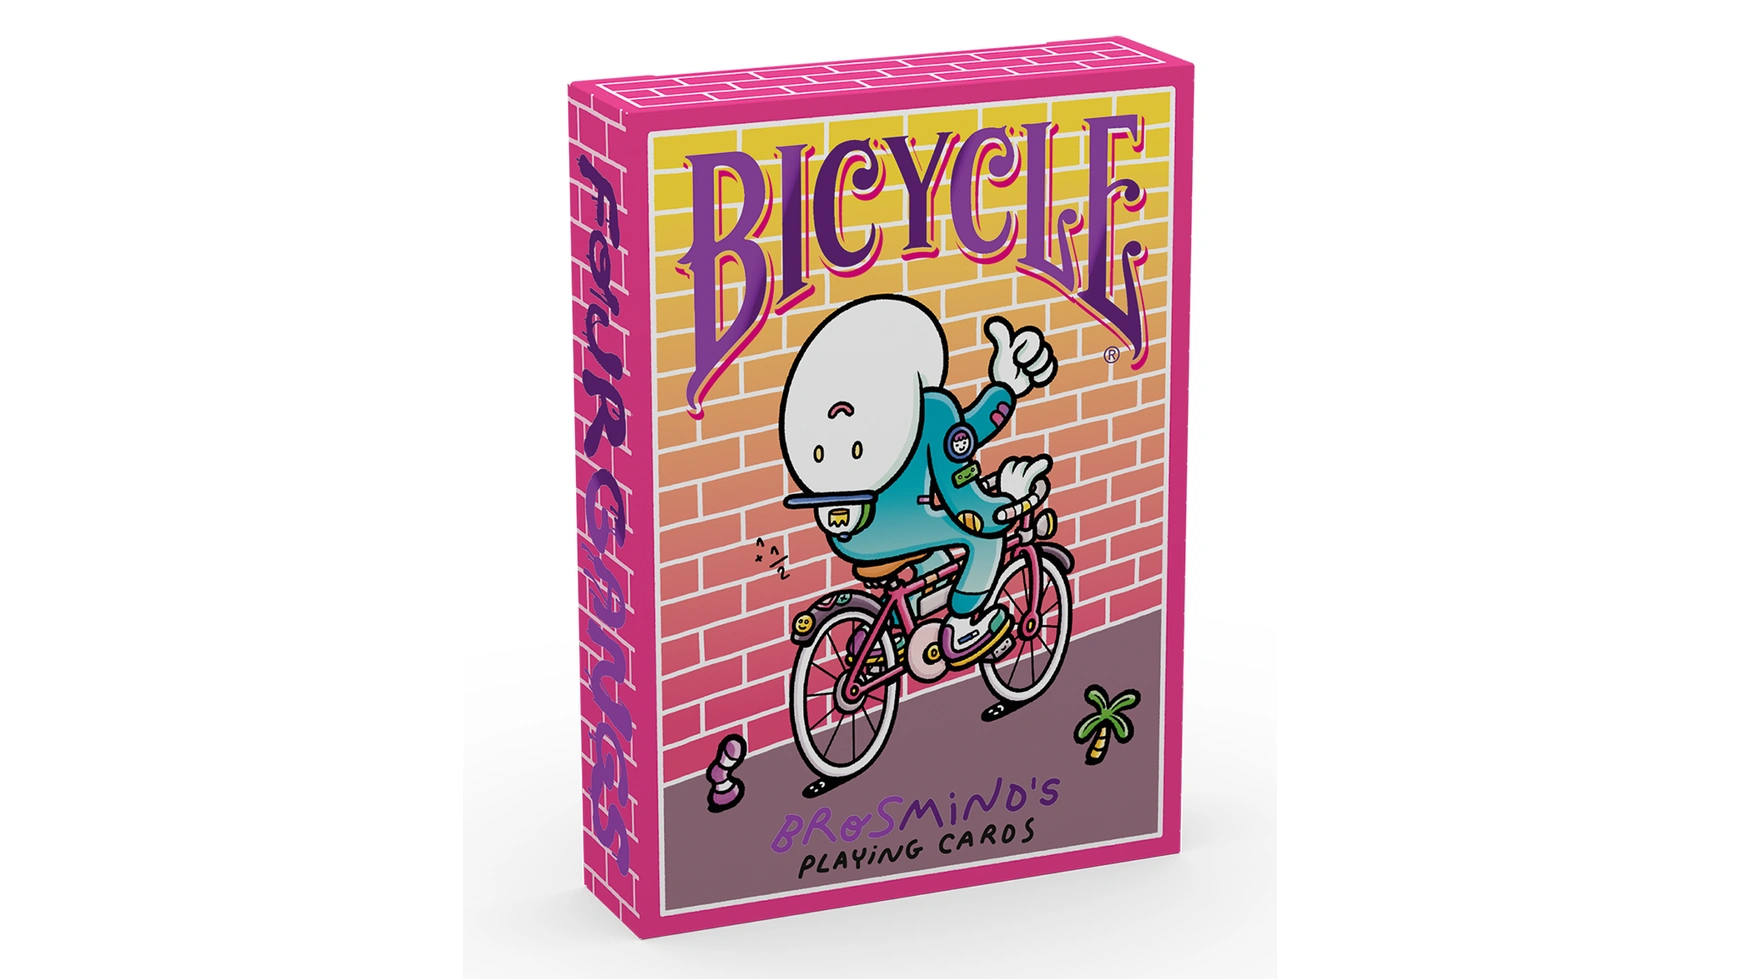 Bicycle Brosmind Four Gangs bicycle карты bicycle arch angels